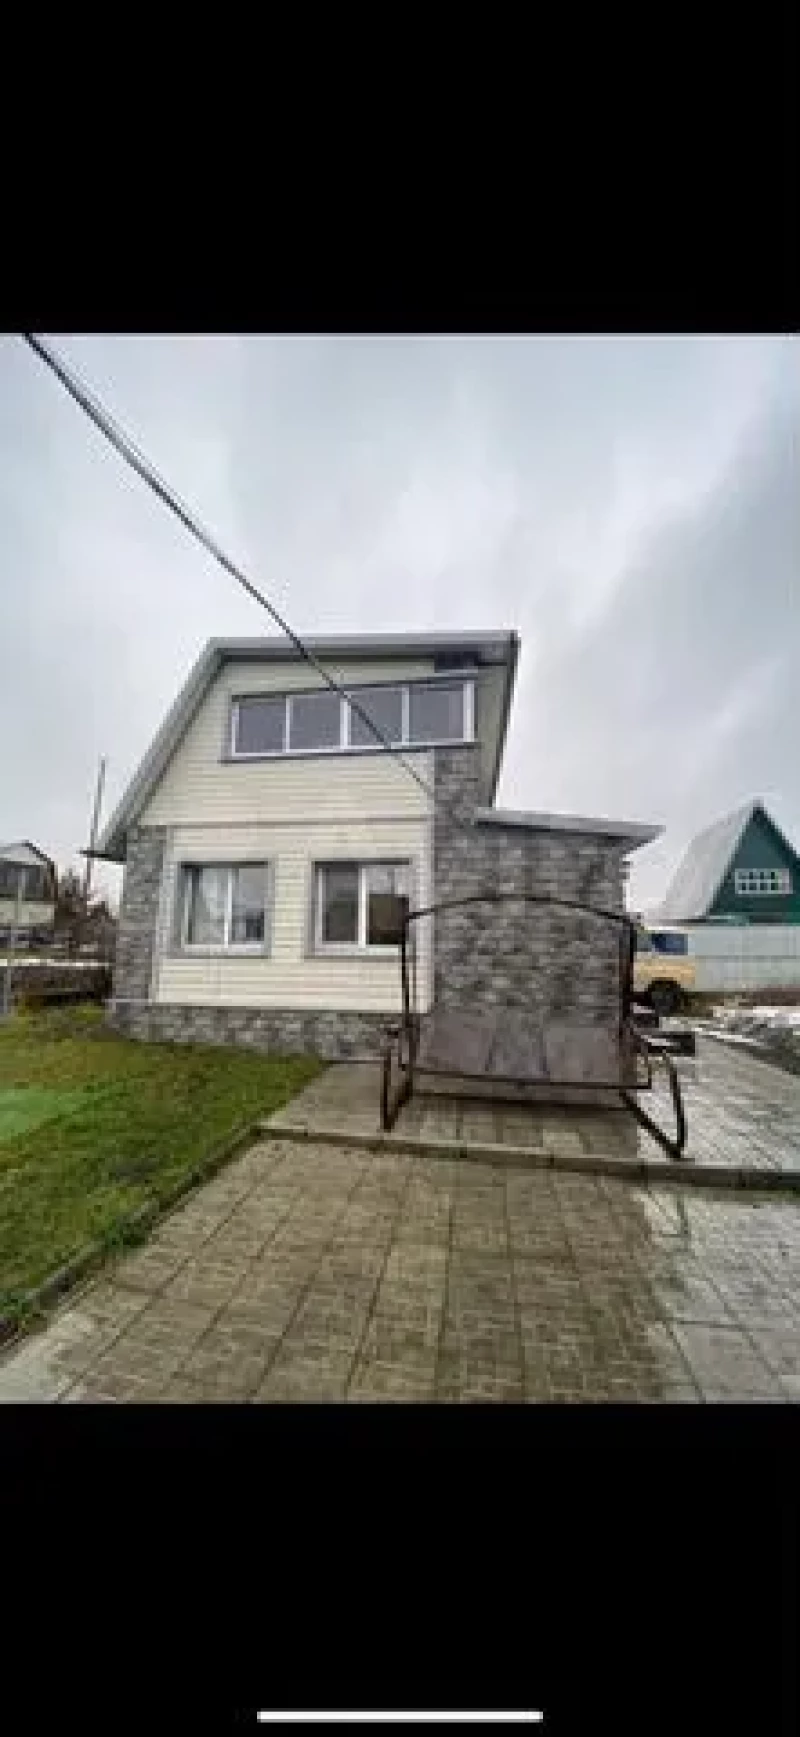 Уютный дачный домик с беседкой продают в Барнауле за 3,8 млн рублей